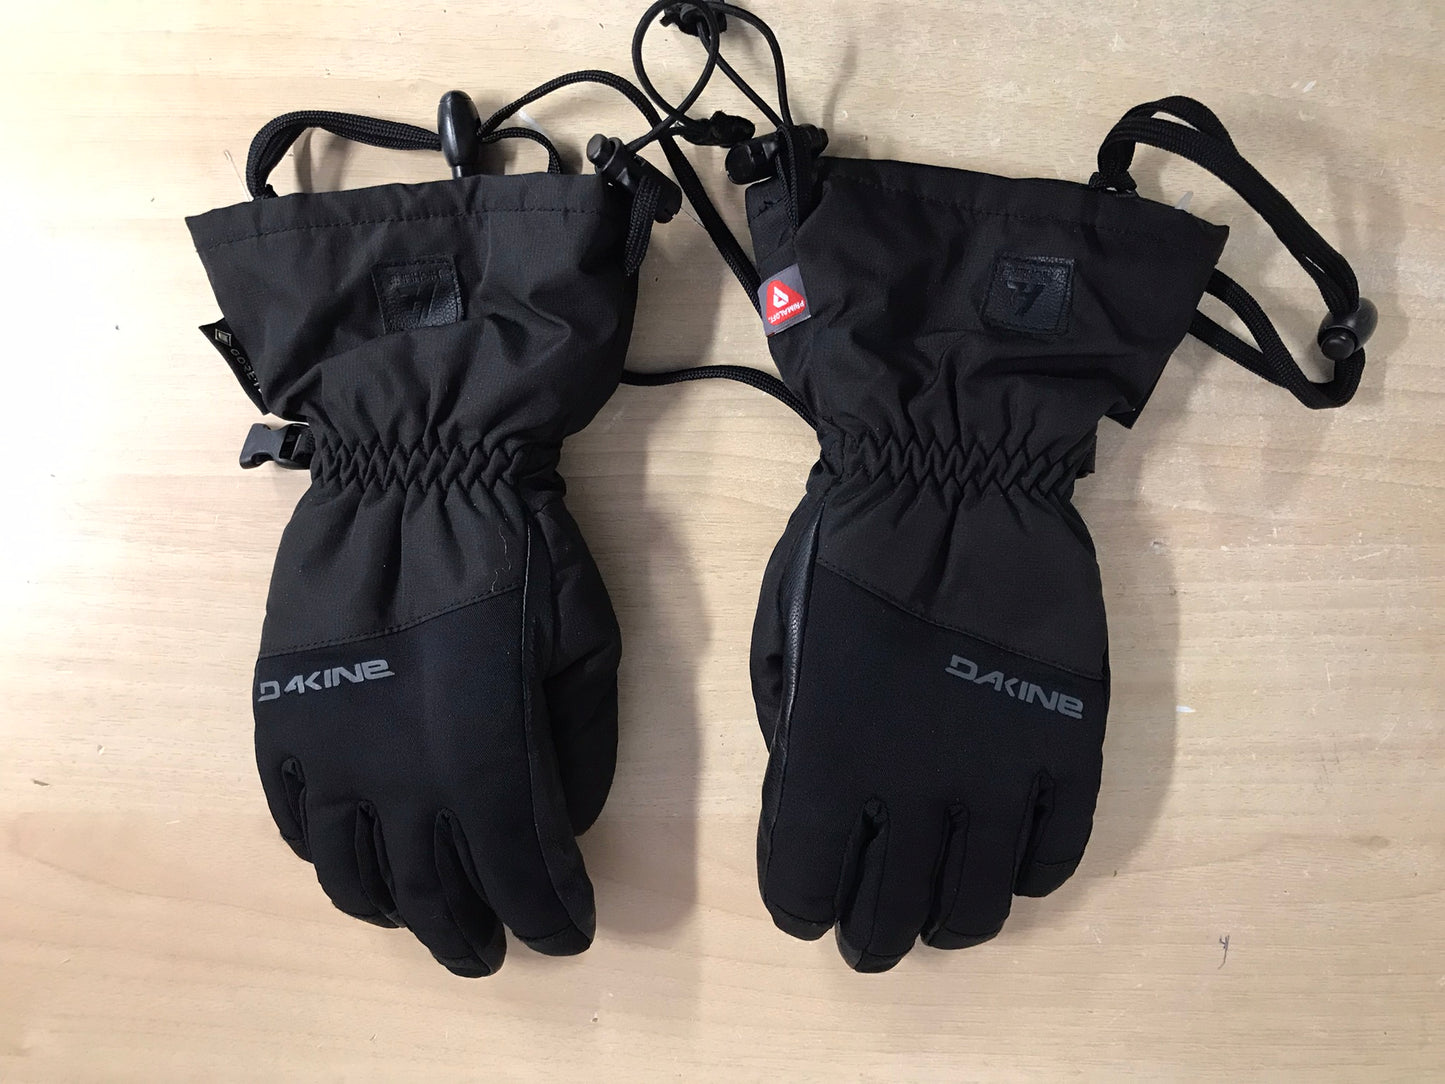 Winter Gloves and Mitts Child Size 7-9 Dakine Gore-Tex Plus Warm Waterproof Ski Gloves